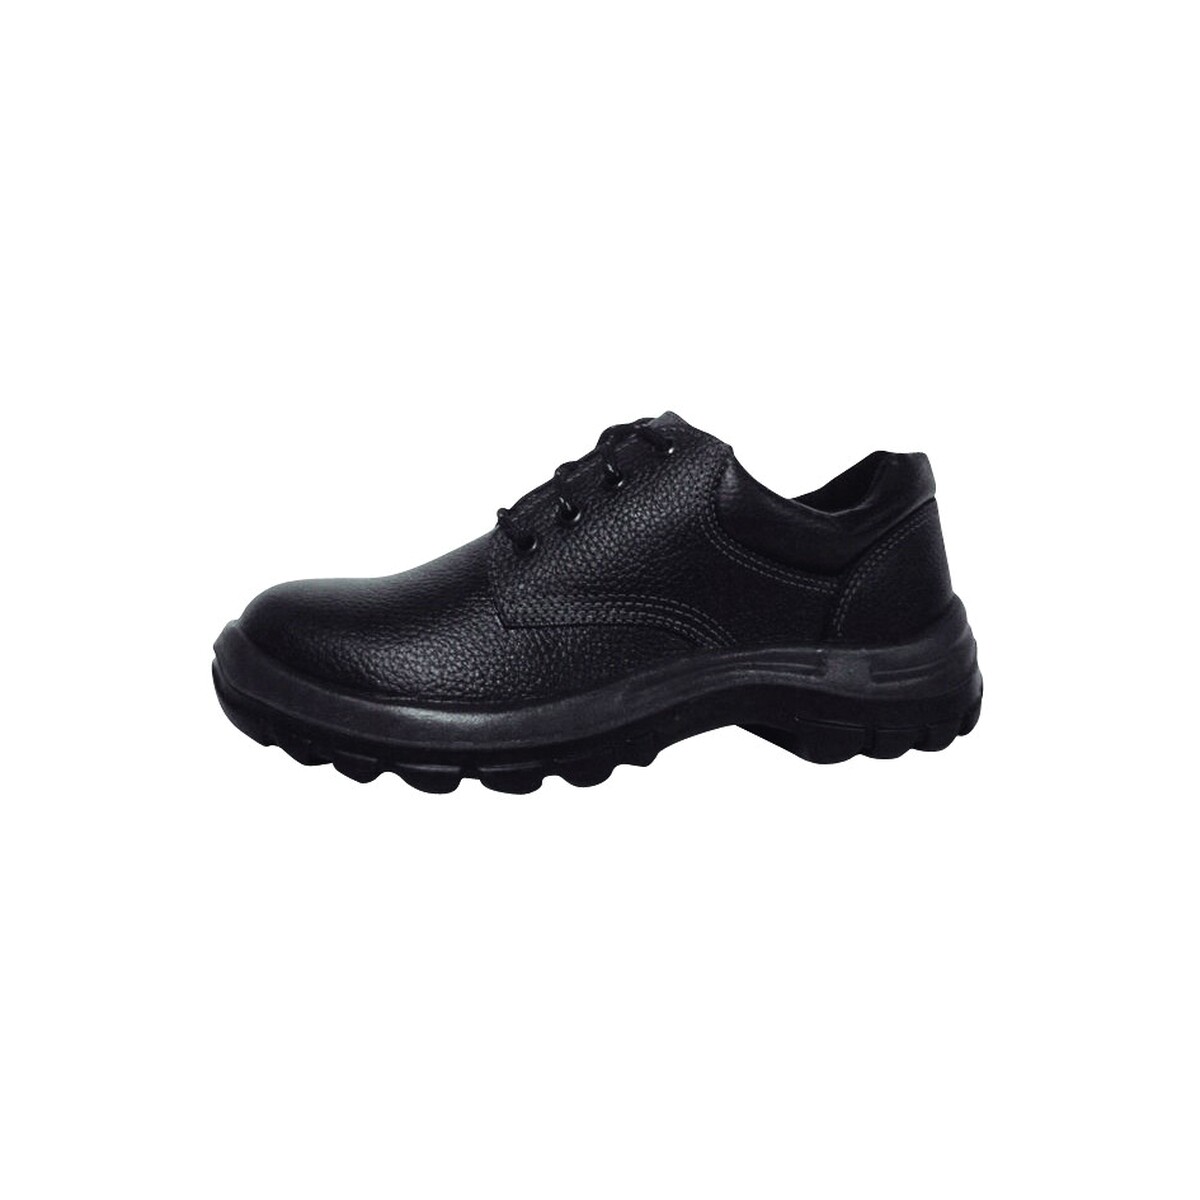 Zapato industrial con puntera plástica - Worksafe Nº 35 